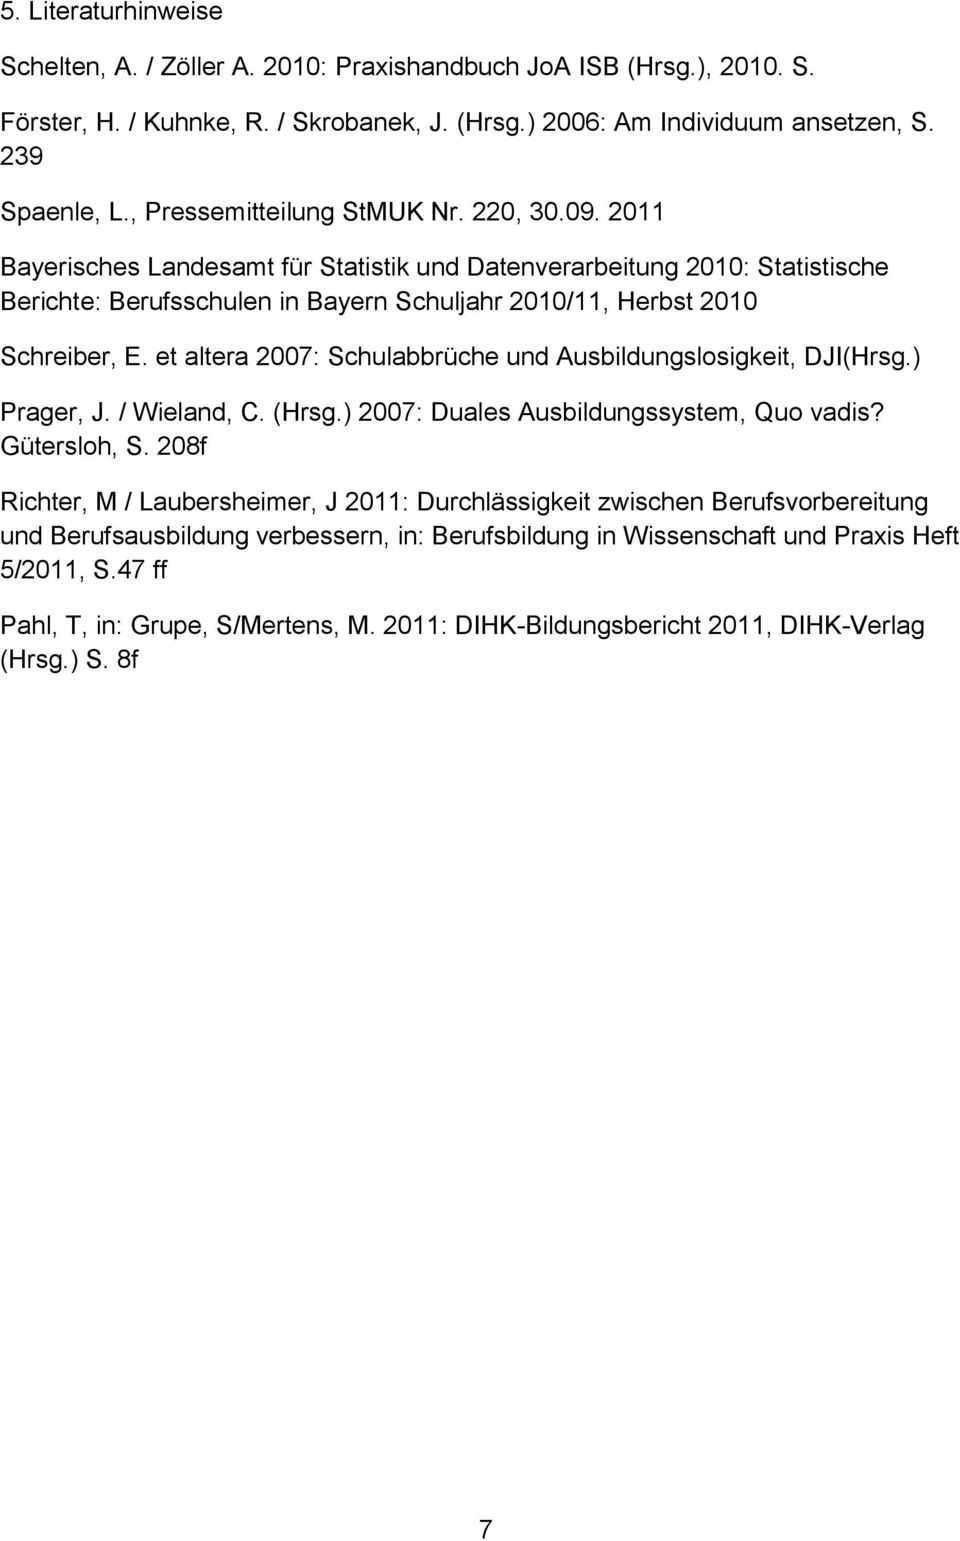 2011 Bayerisches Landesamt für Statistik und Datenverarbeitung 2010: Statistische Berichte: Berufsschulen in Bayern Schuljahr 2010/11, Herbst 2010 Schreiber, E.